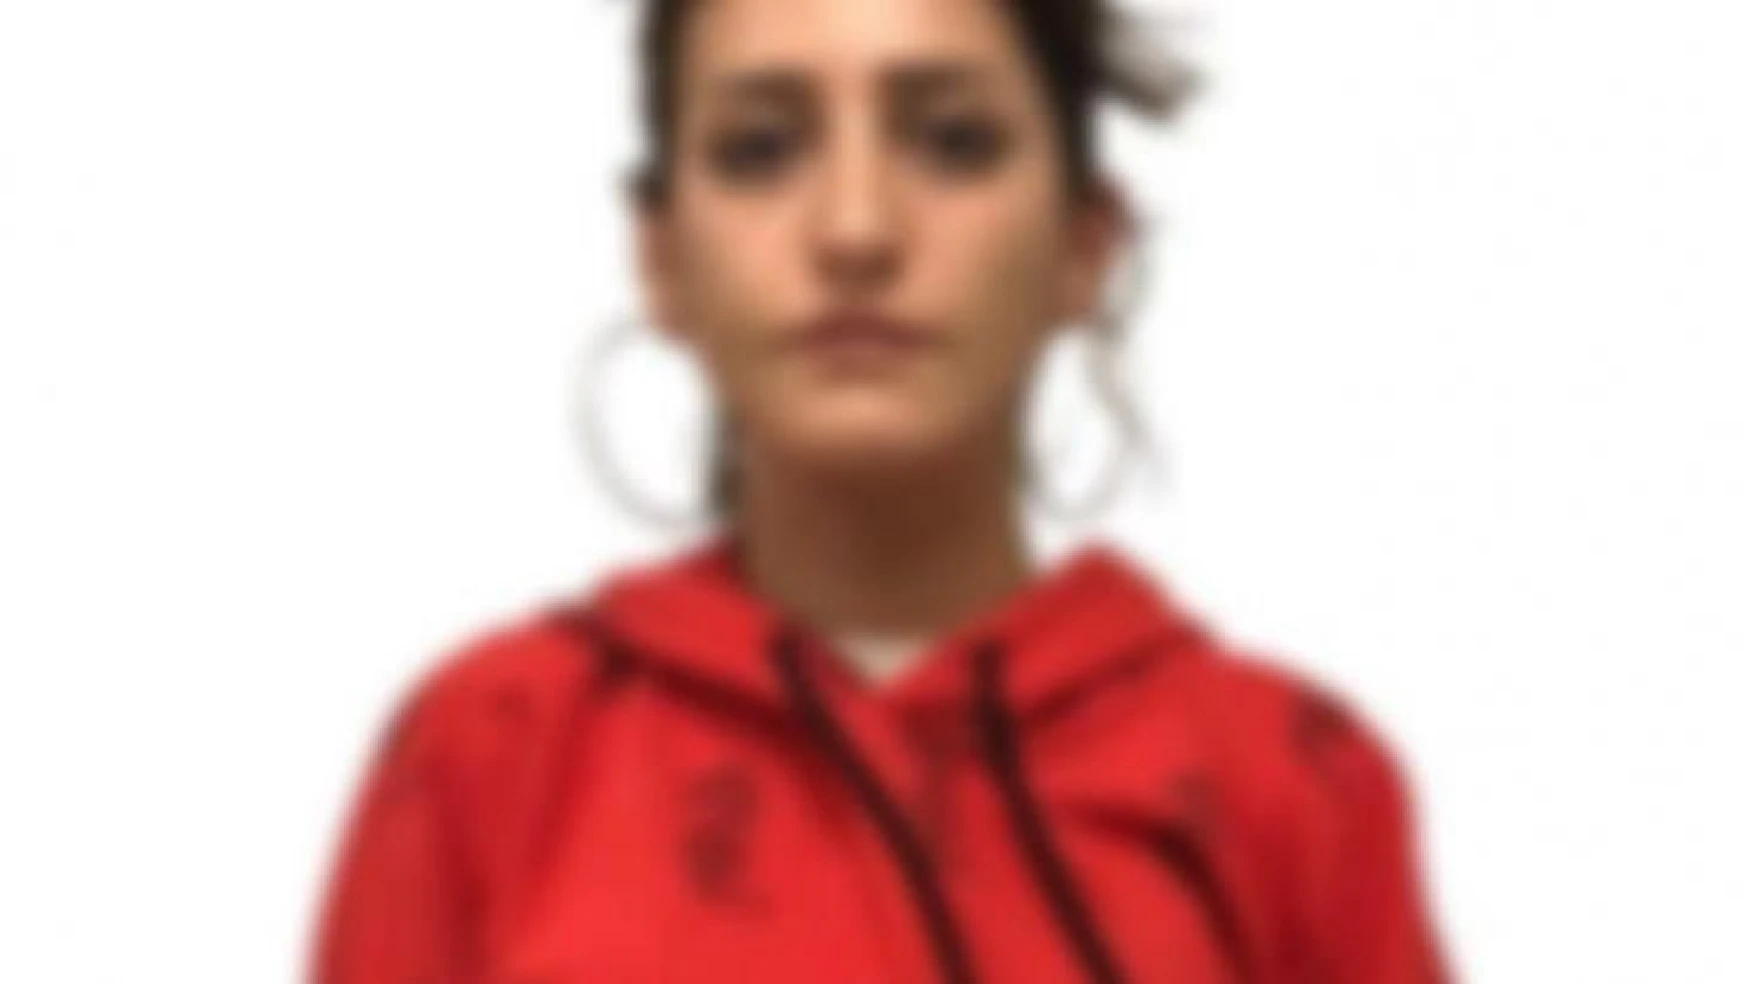 Aranan terör örgütü PKK üyesi kadın İstanbul'da yakalandı